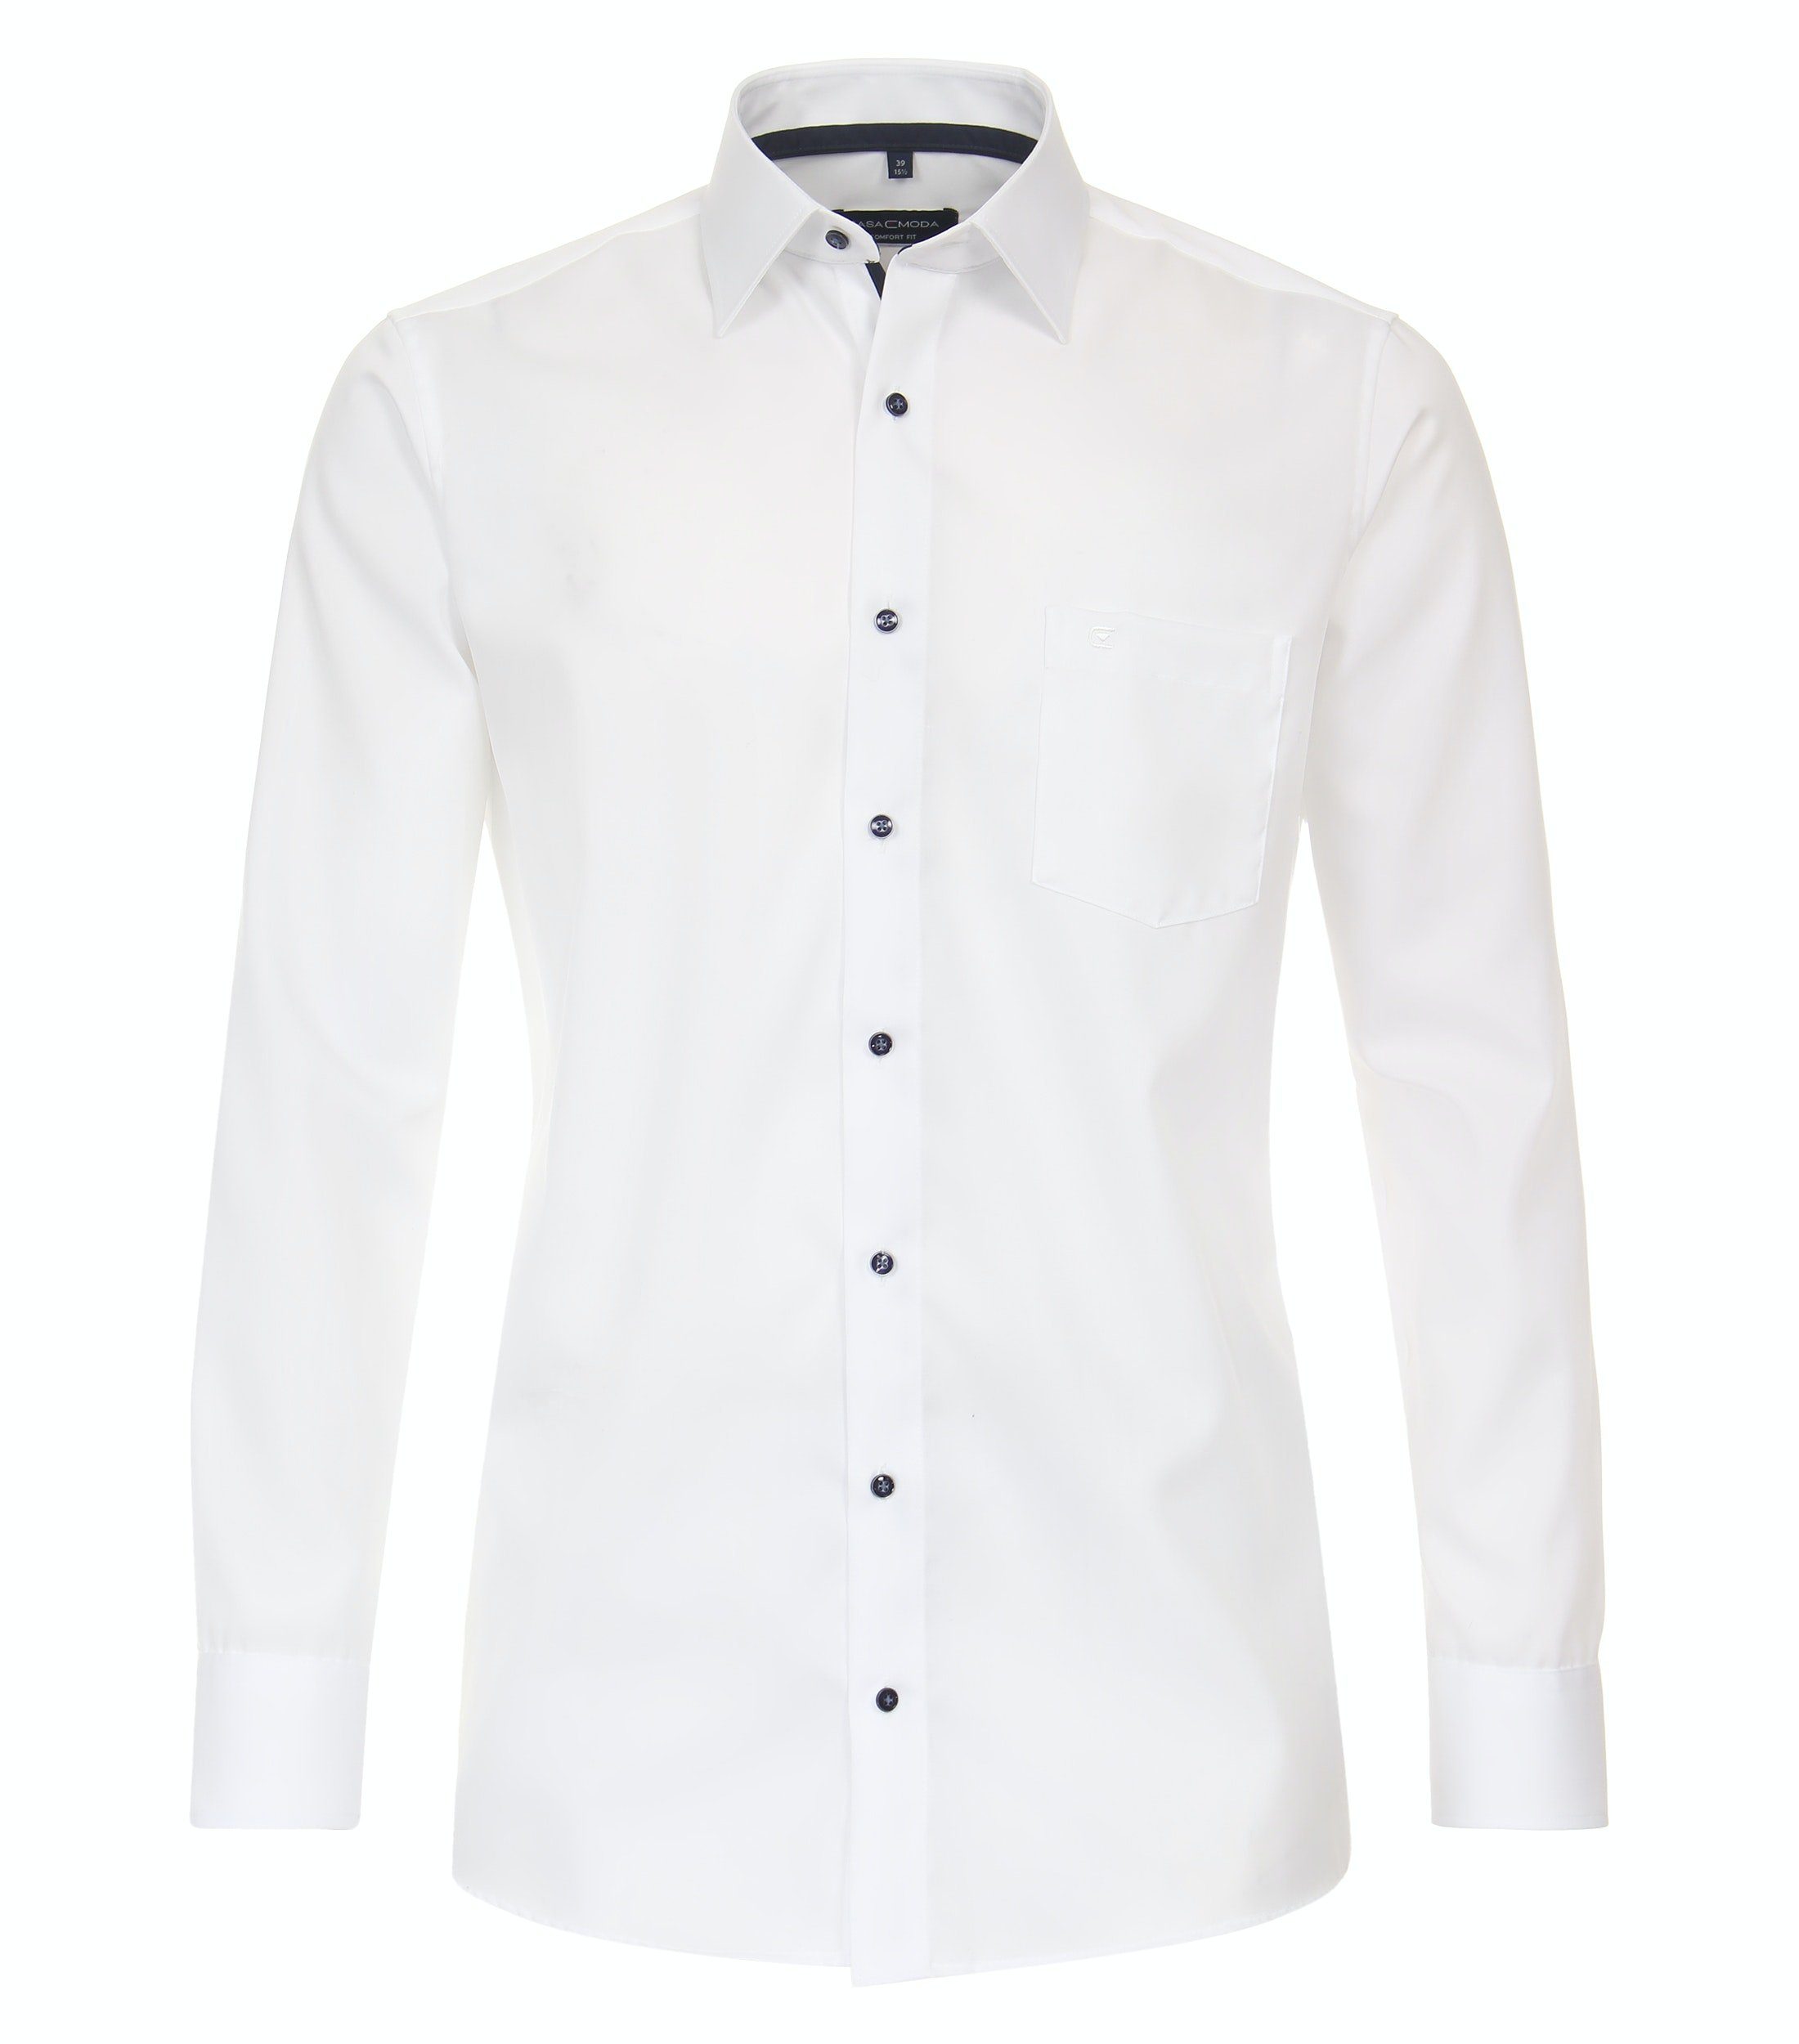 CASAMODA Businesshemd Businesshemd - Comfort Fit - Langarm - Einfarbig - Weiß Weiß (000)